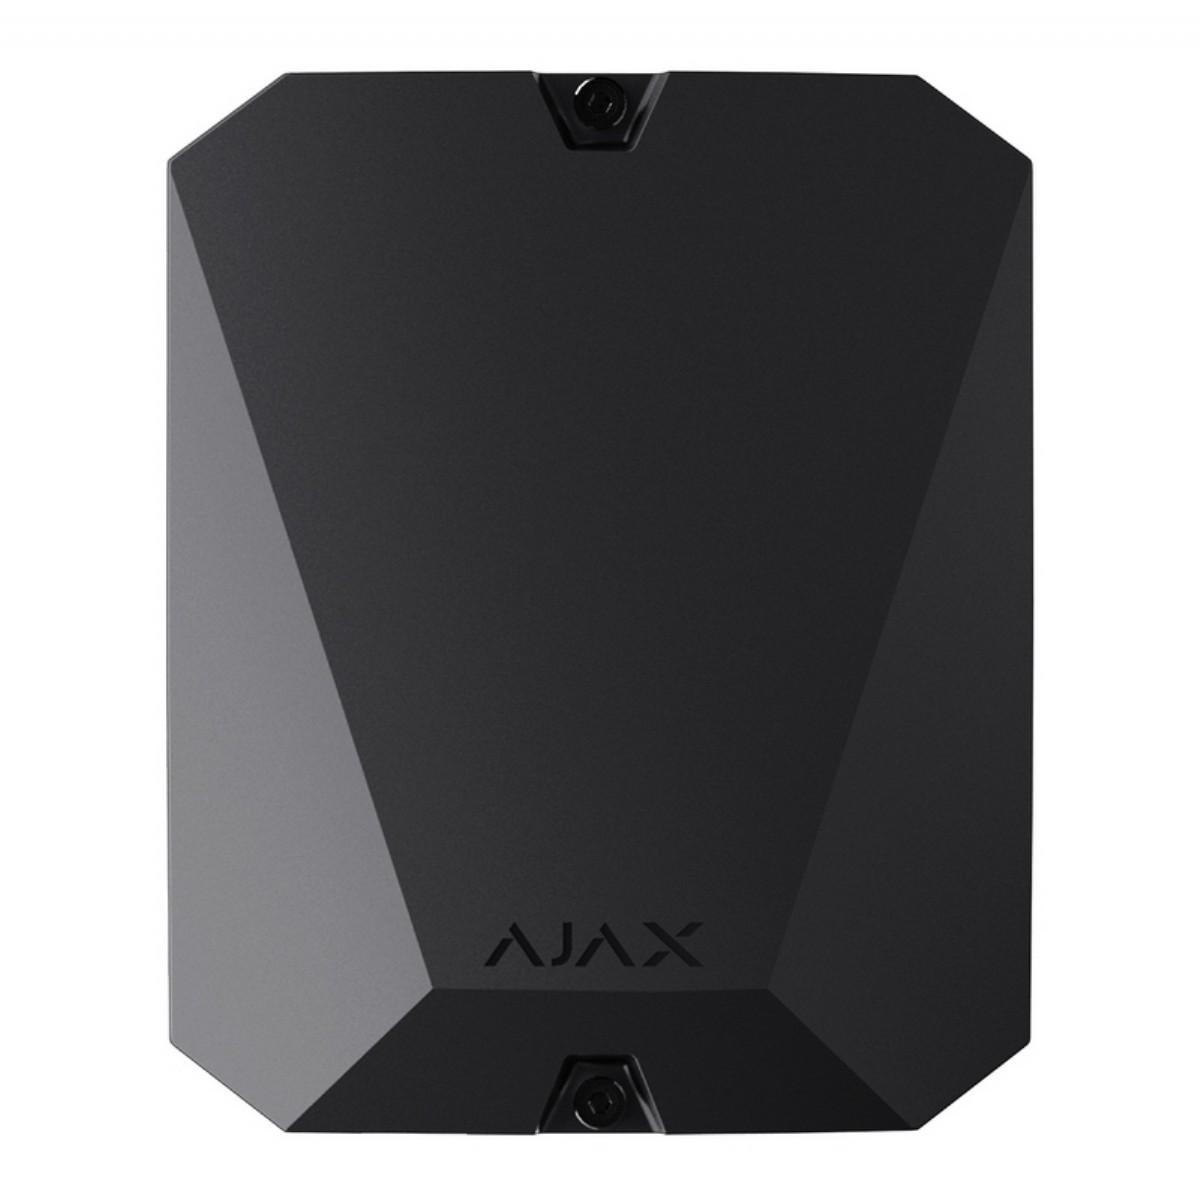 Alarm Aksesuar | Ajax-0037 Ajax MultiTransmitter, 3ncü parti kablolu sistemler için Ajax kablosuza çevirici entegrasyon modülü, | Ajax-0037 |  | 